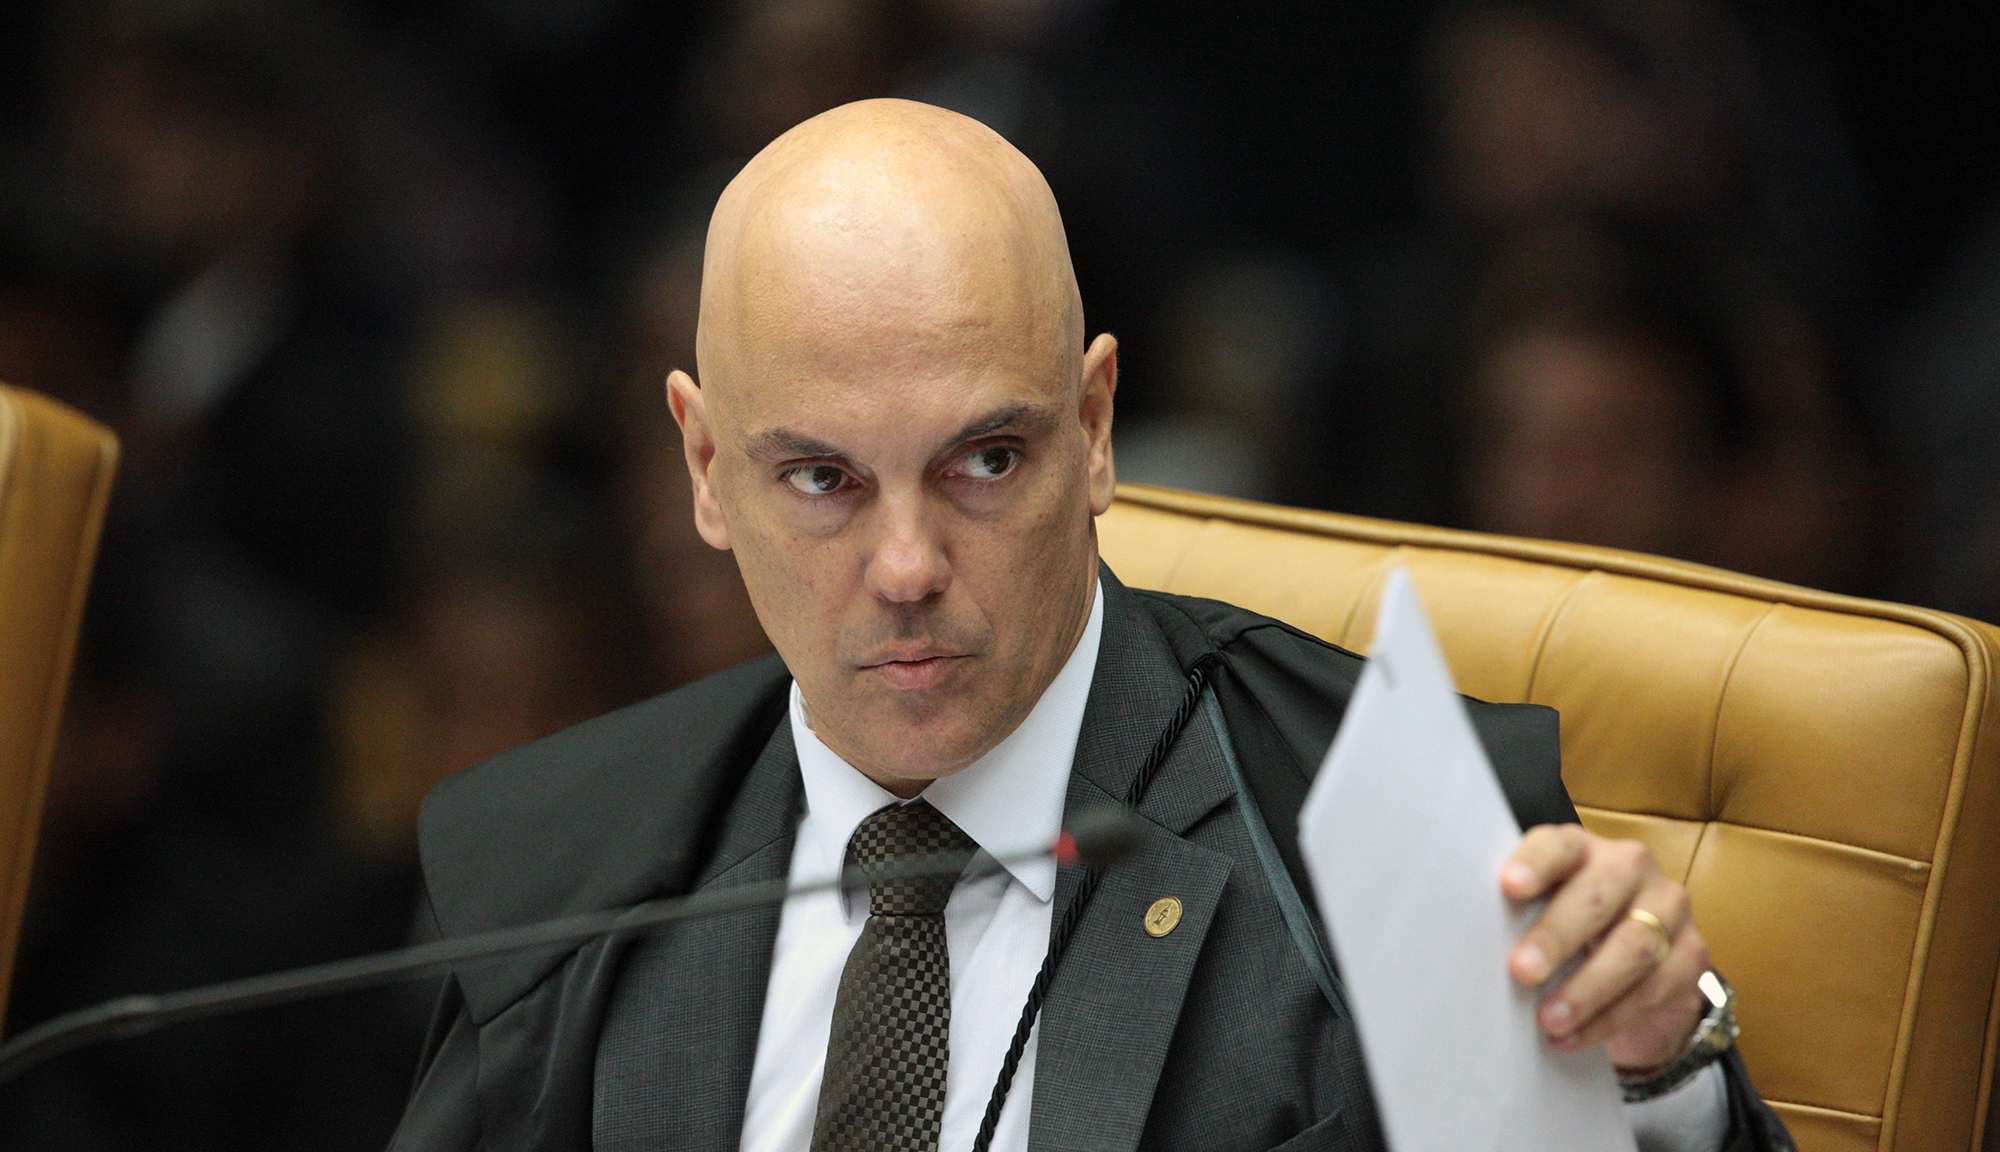 'Indefiro integralmente o pedido da Procuradoria Geral da República', diz Moraes